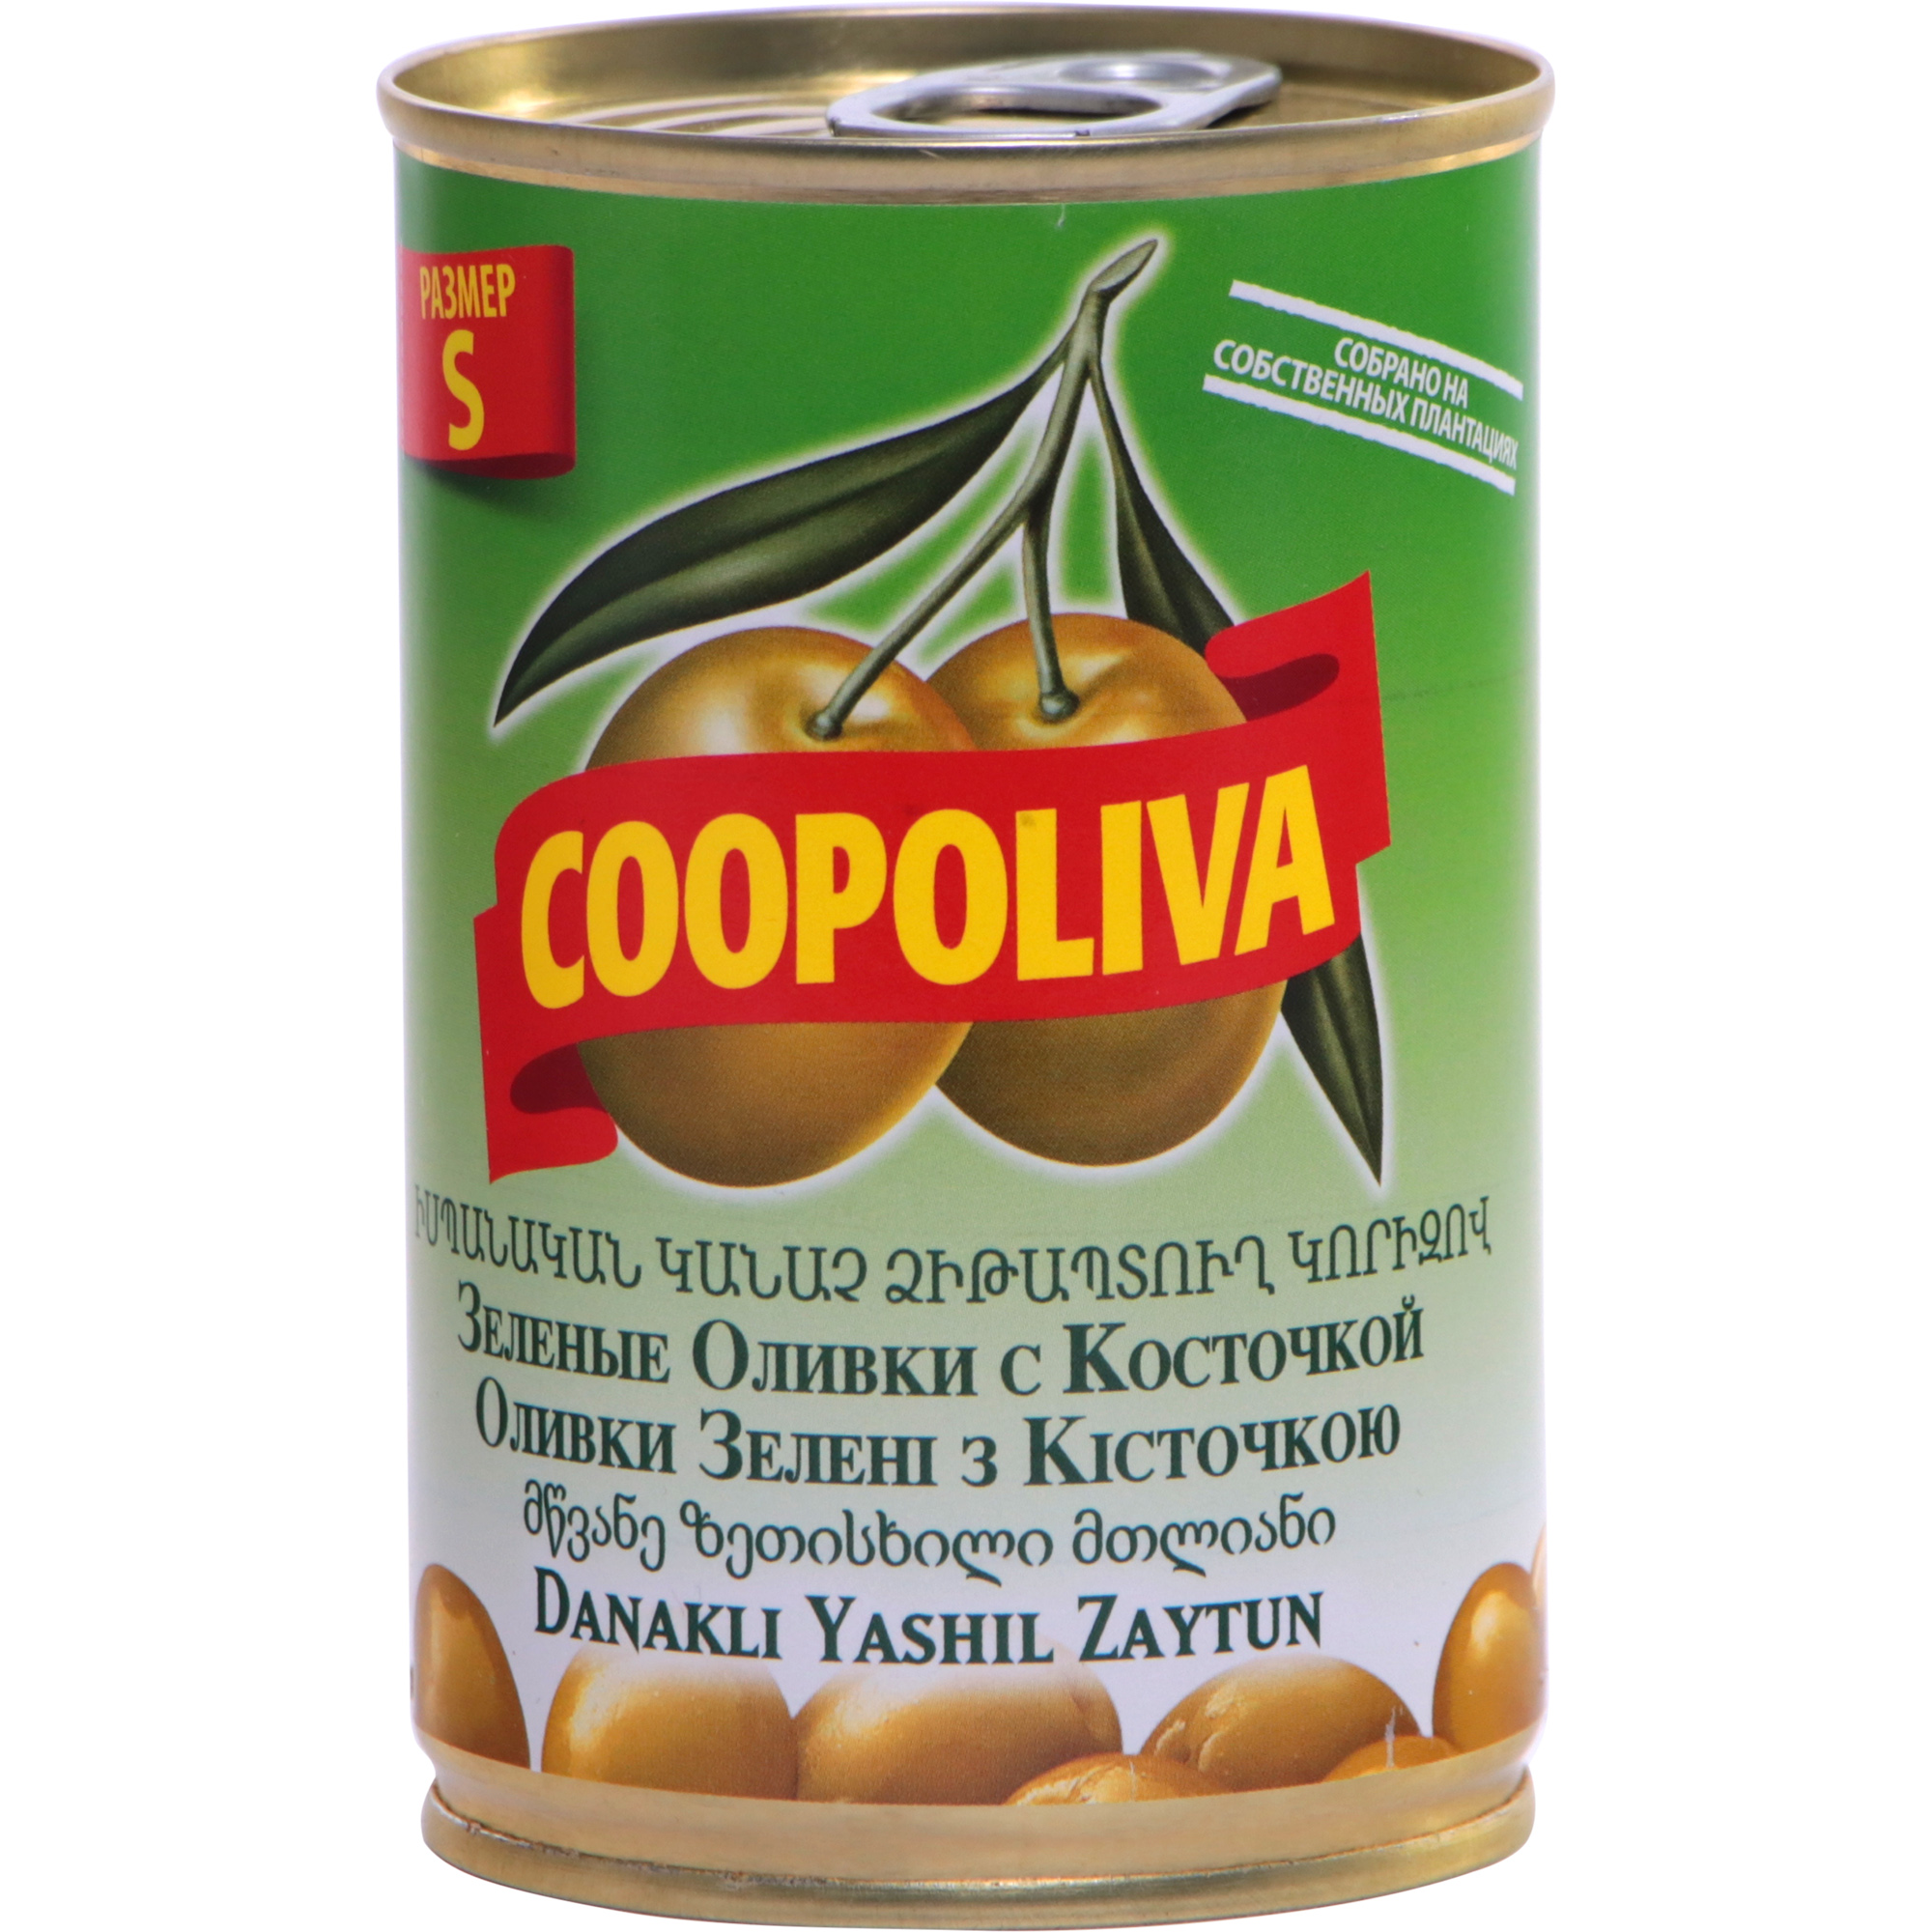 Оливки COOPOLIVA S с косточкой, 300 г оливки itlv с косточкой 300 г